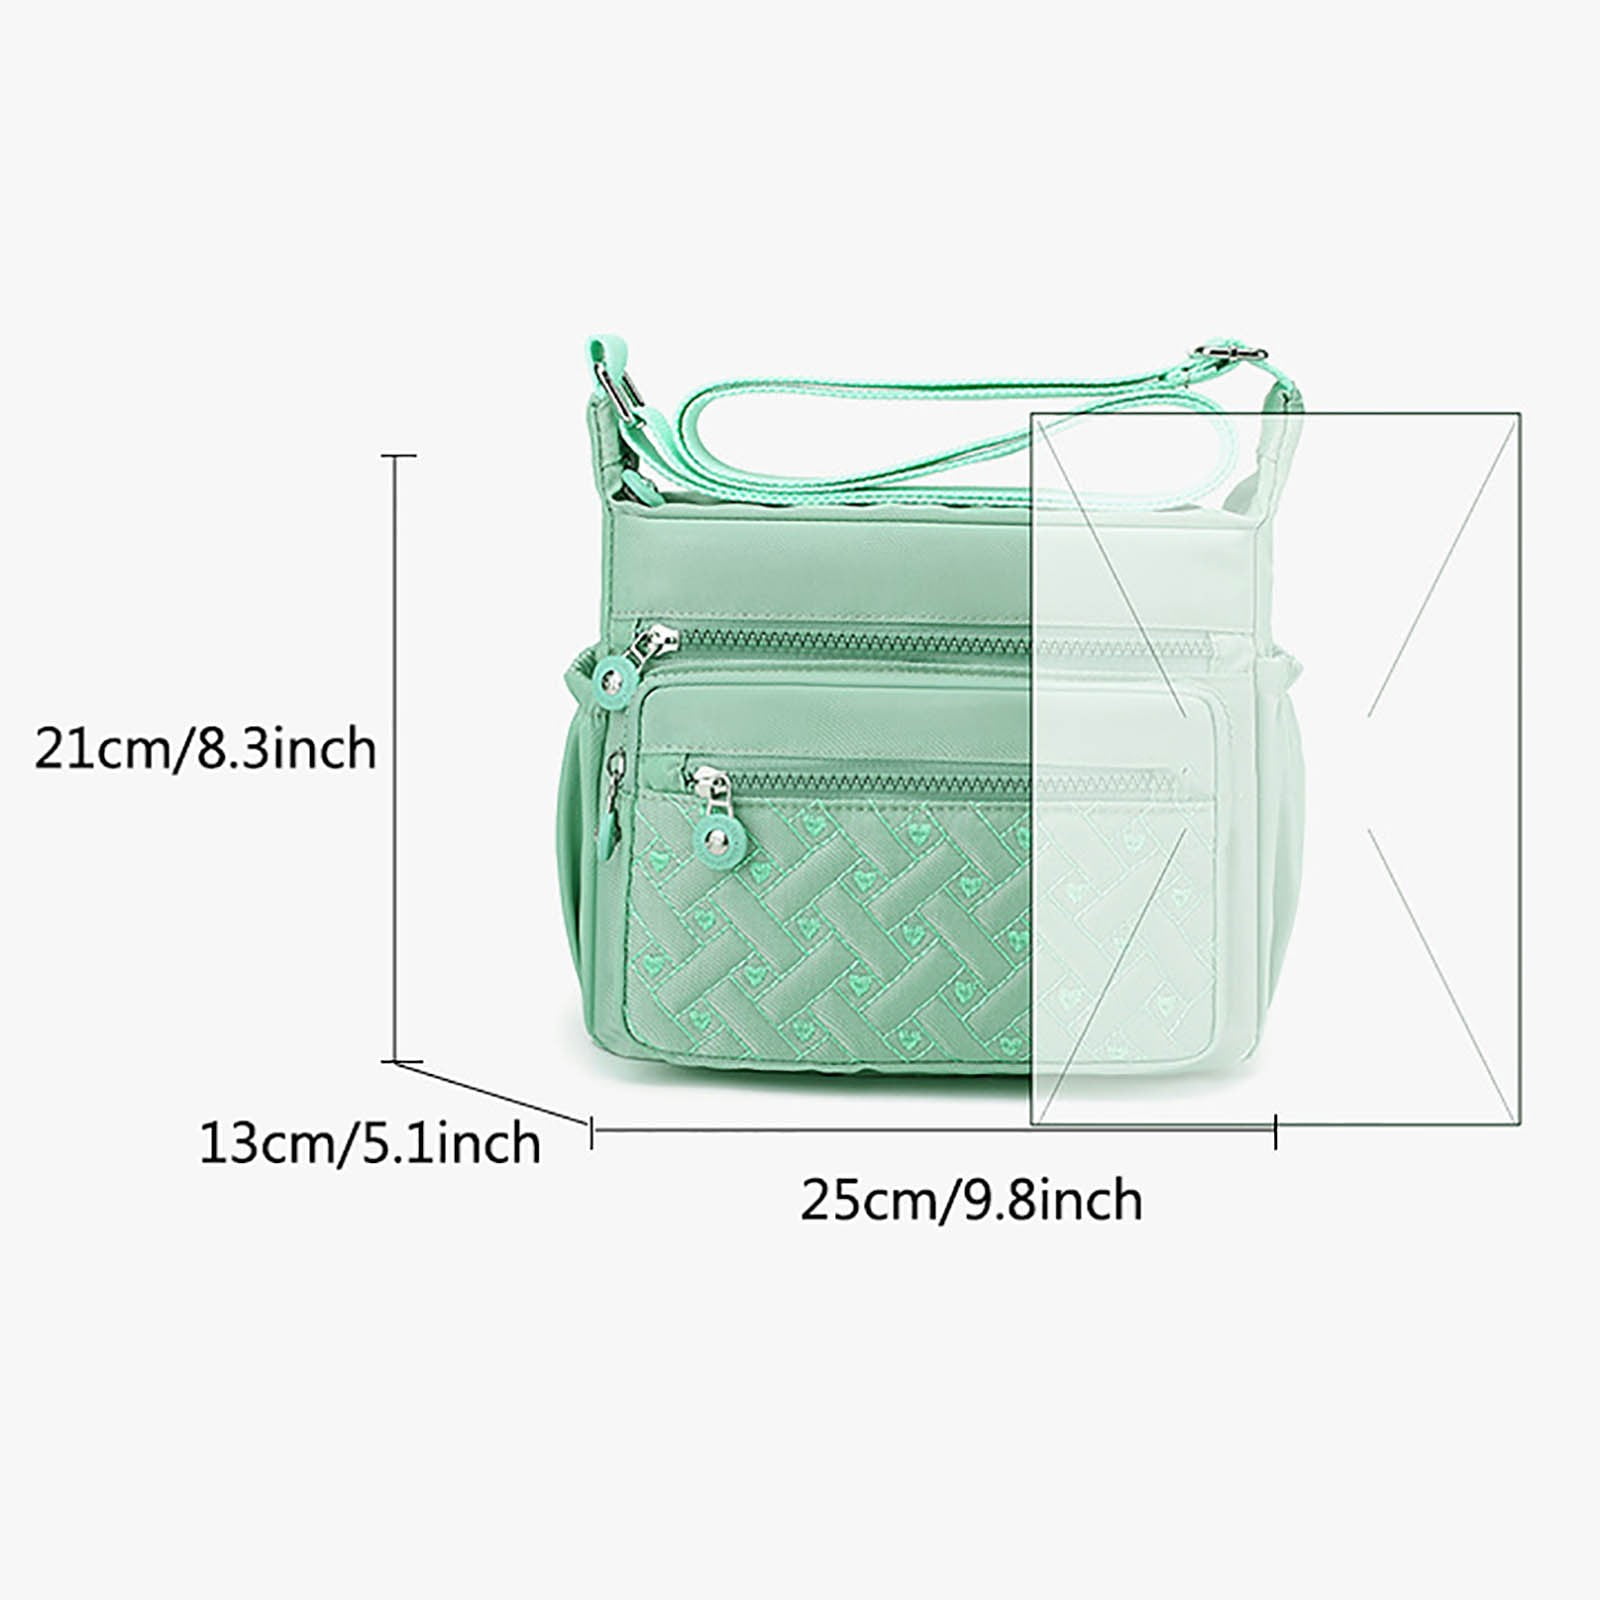 Latest Elegant LVs Scarf Design Over Shoulder/Cross  Shoulder/Clutch/HandHeld Handbag/ Sling bag /Top 10 bag for Sale/for girls  and women